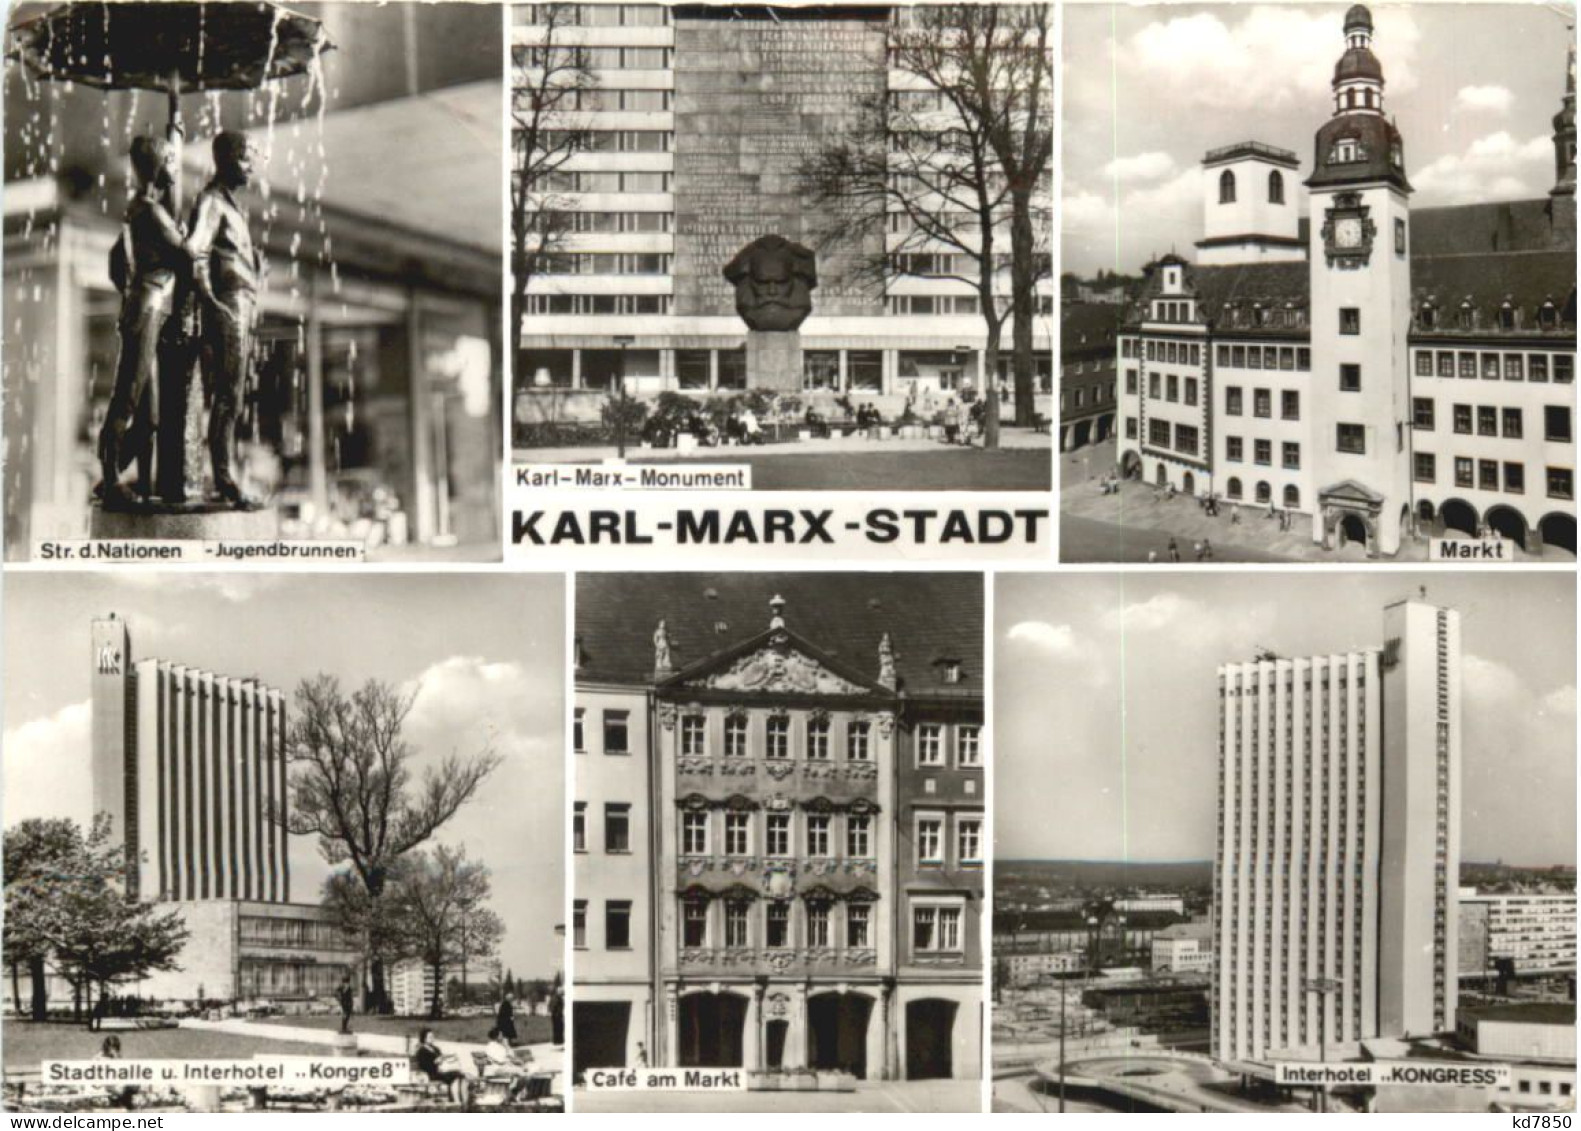 Karl-Marx-Stadt - Chemnitz (Karl-Marx-Stadt 1953-1990)